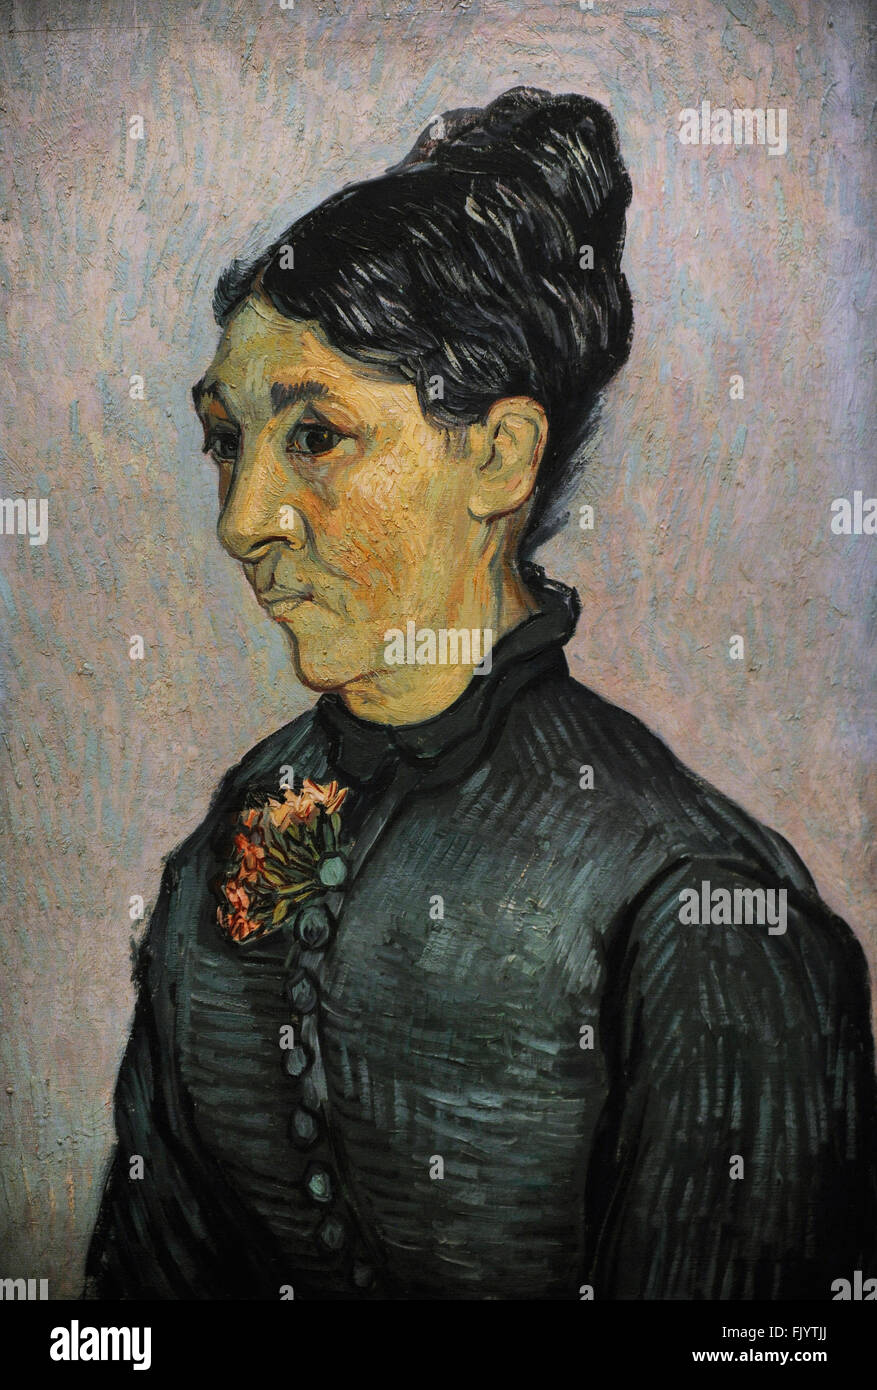 Vincent Van Gogh (1853-1890). Peintre postimpressionniste néerlandais. Portrait de madame Trabuc, 1889. Huile sur toile. Musée de l'Ermitage (le Musée de l'Ermitage). Saint-pétersbourg. La Russie. Banque D'Images